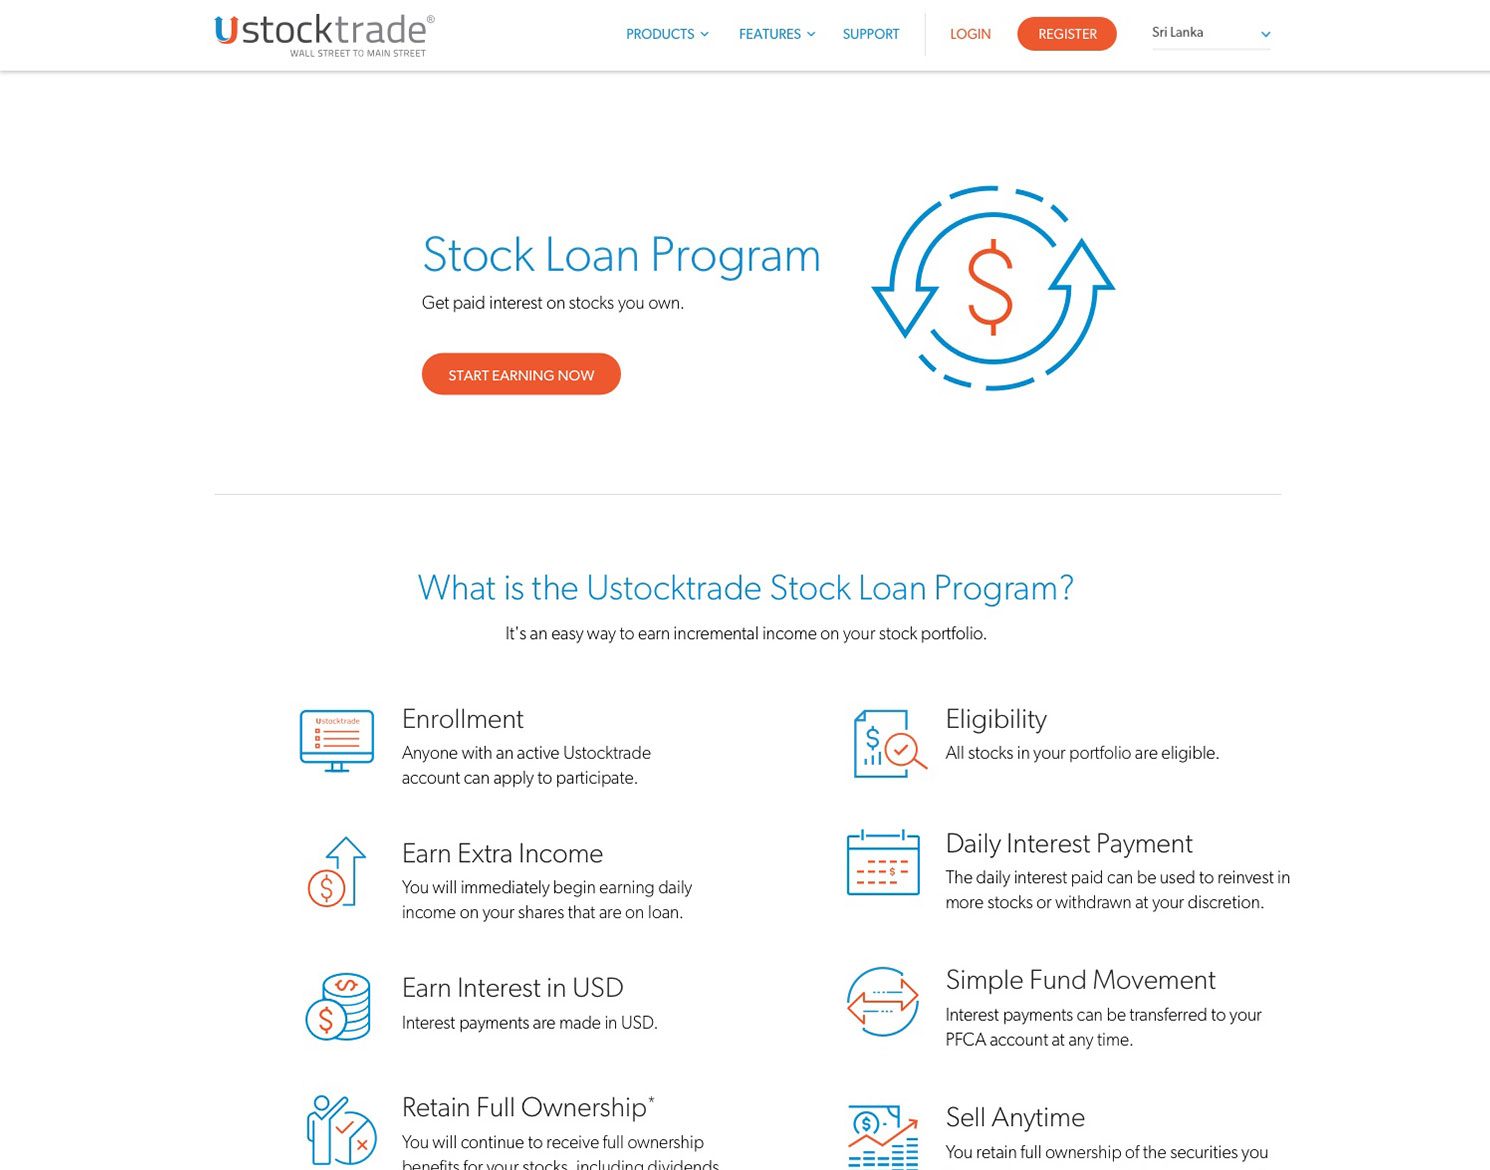 UST LK Website - Stock Loan Program